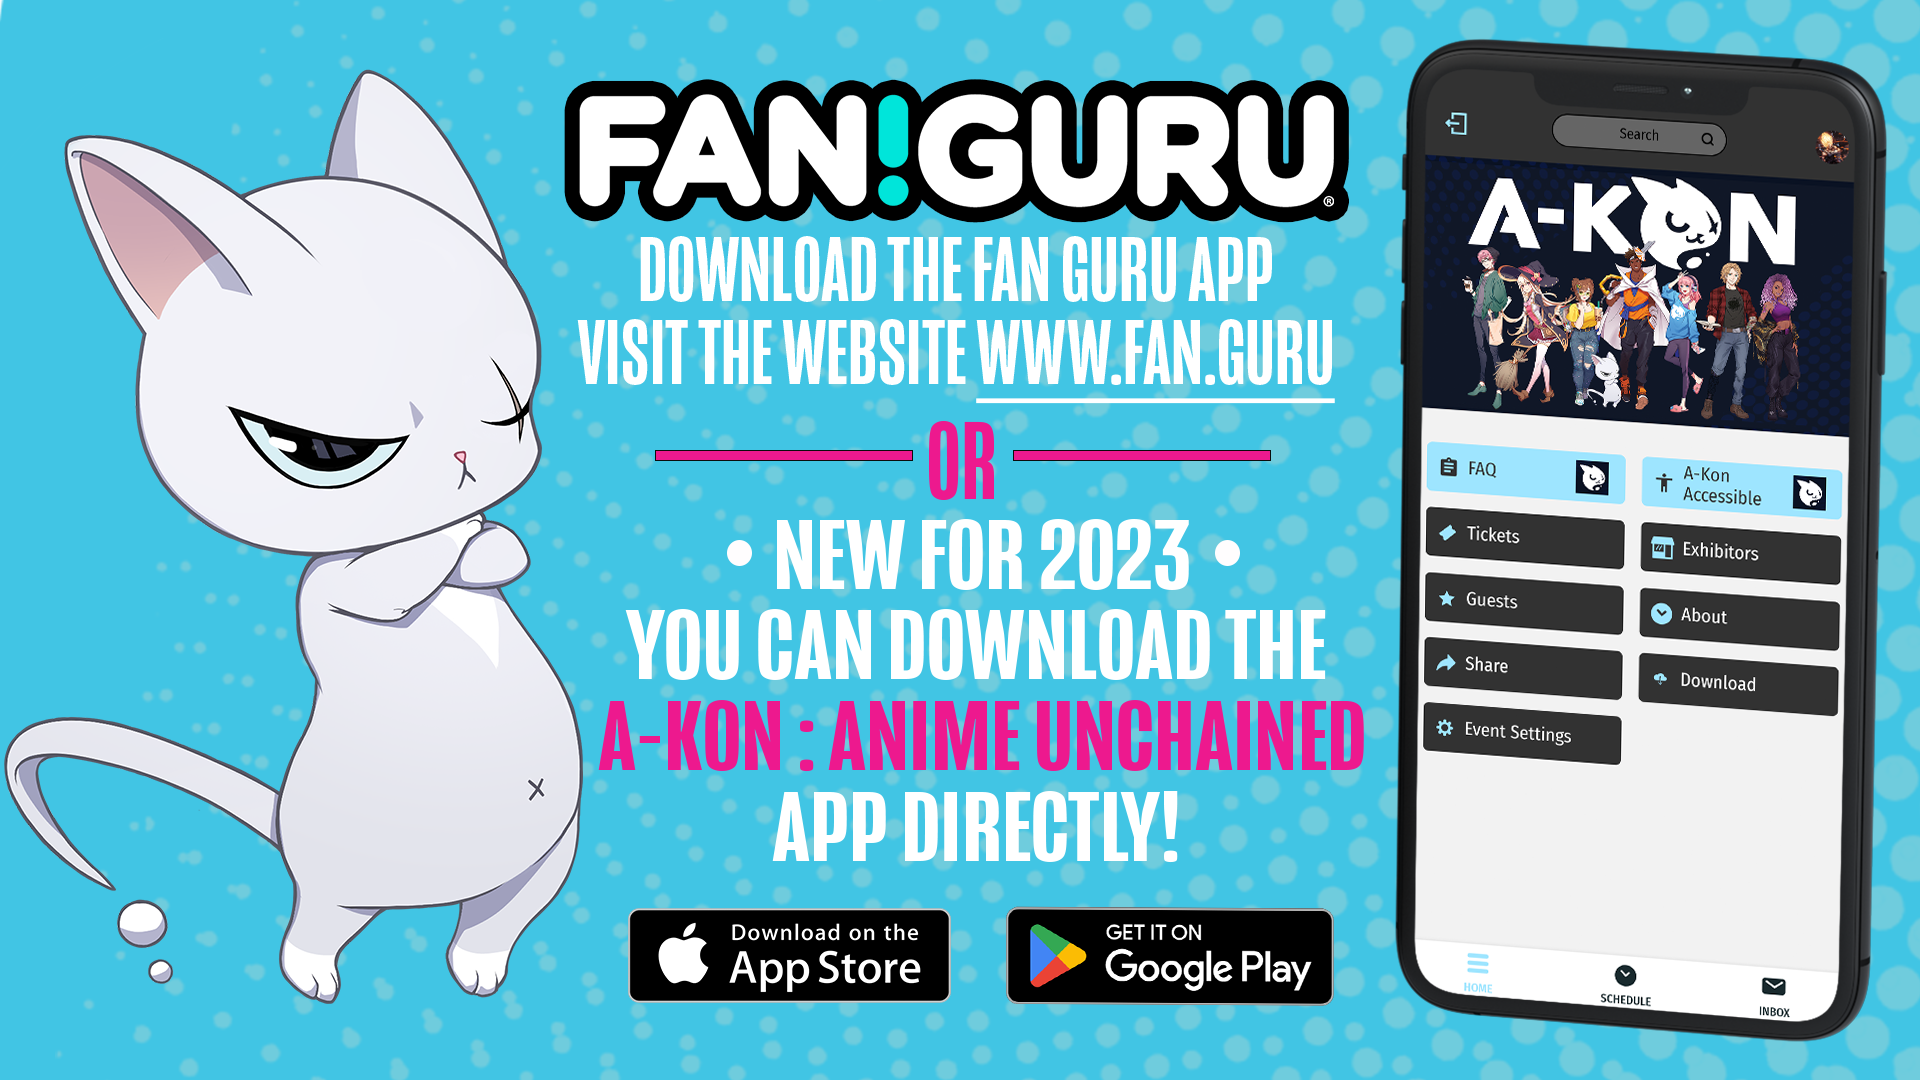 FAN!GURU App